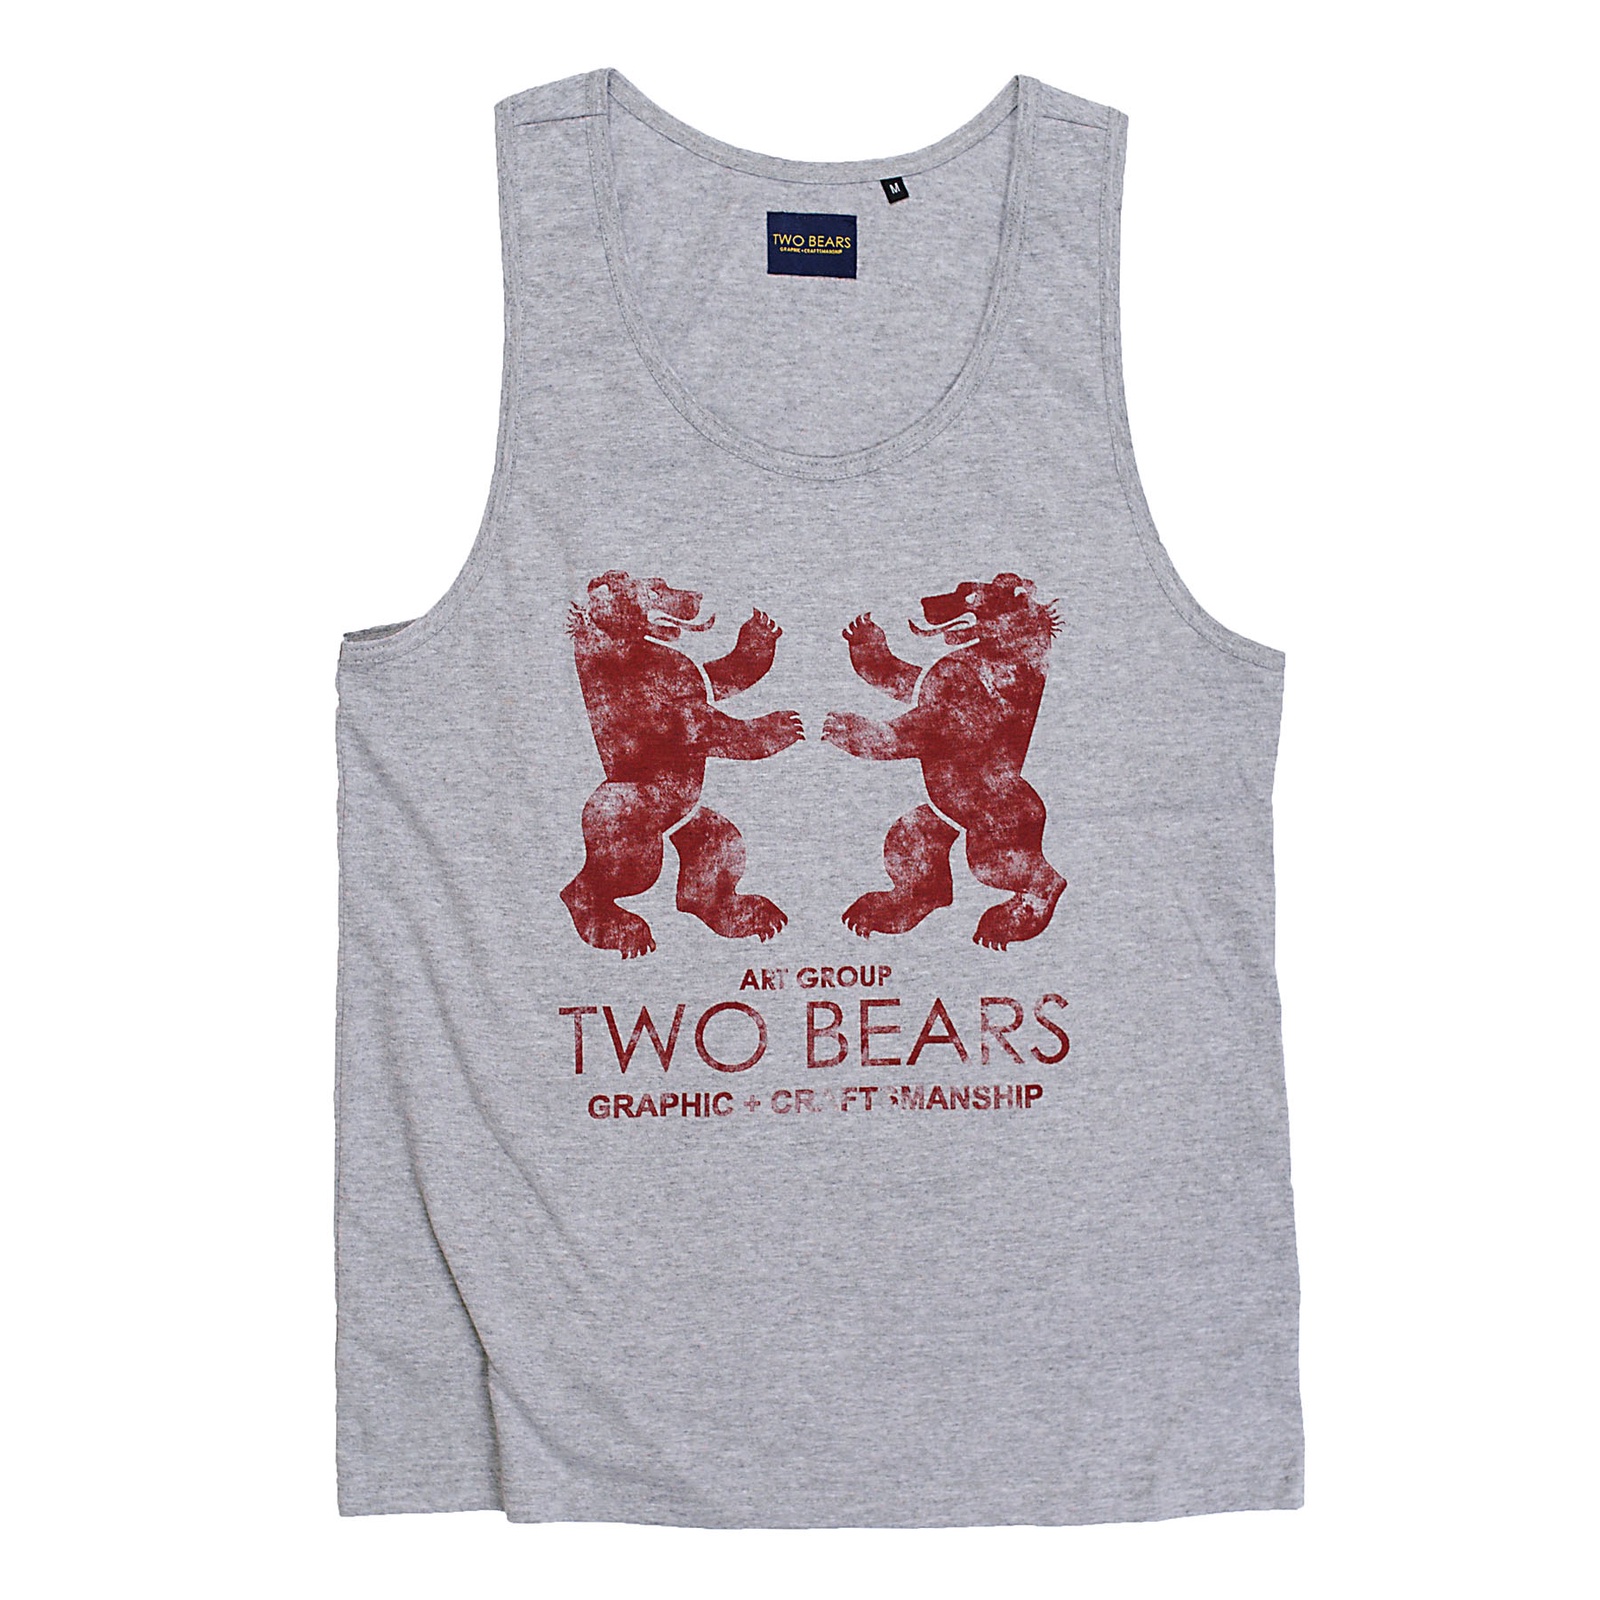 Майка Bears. Бренд 2 Bears. Coolbear майка. Футболки korpo two футболка. Bears 2 shop